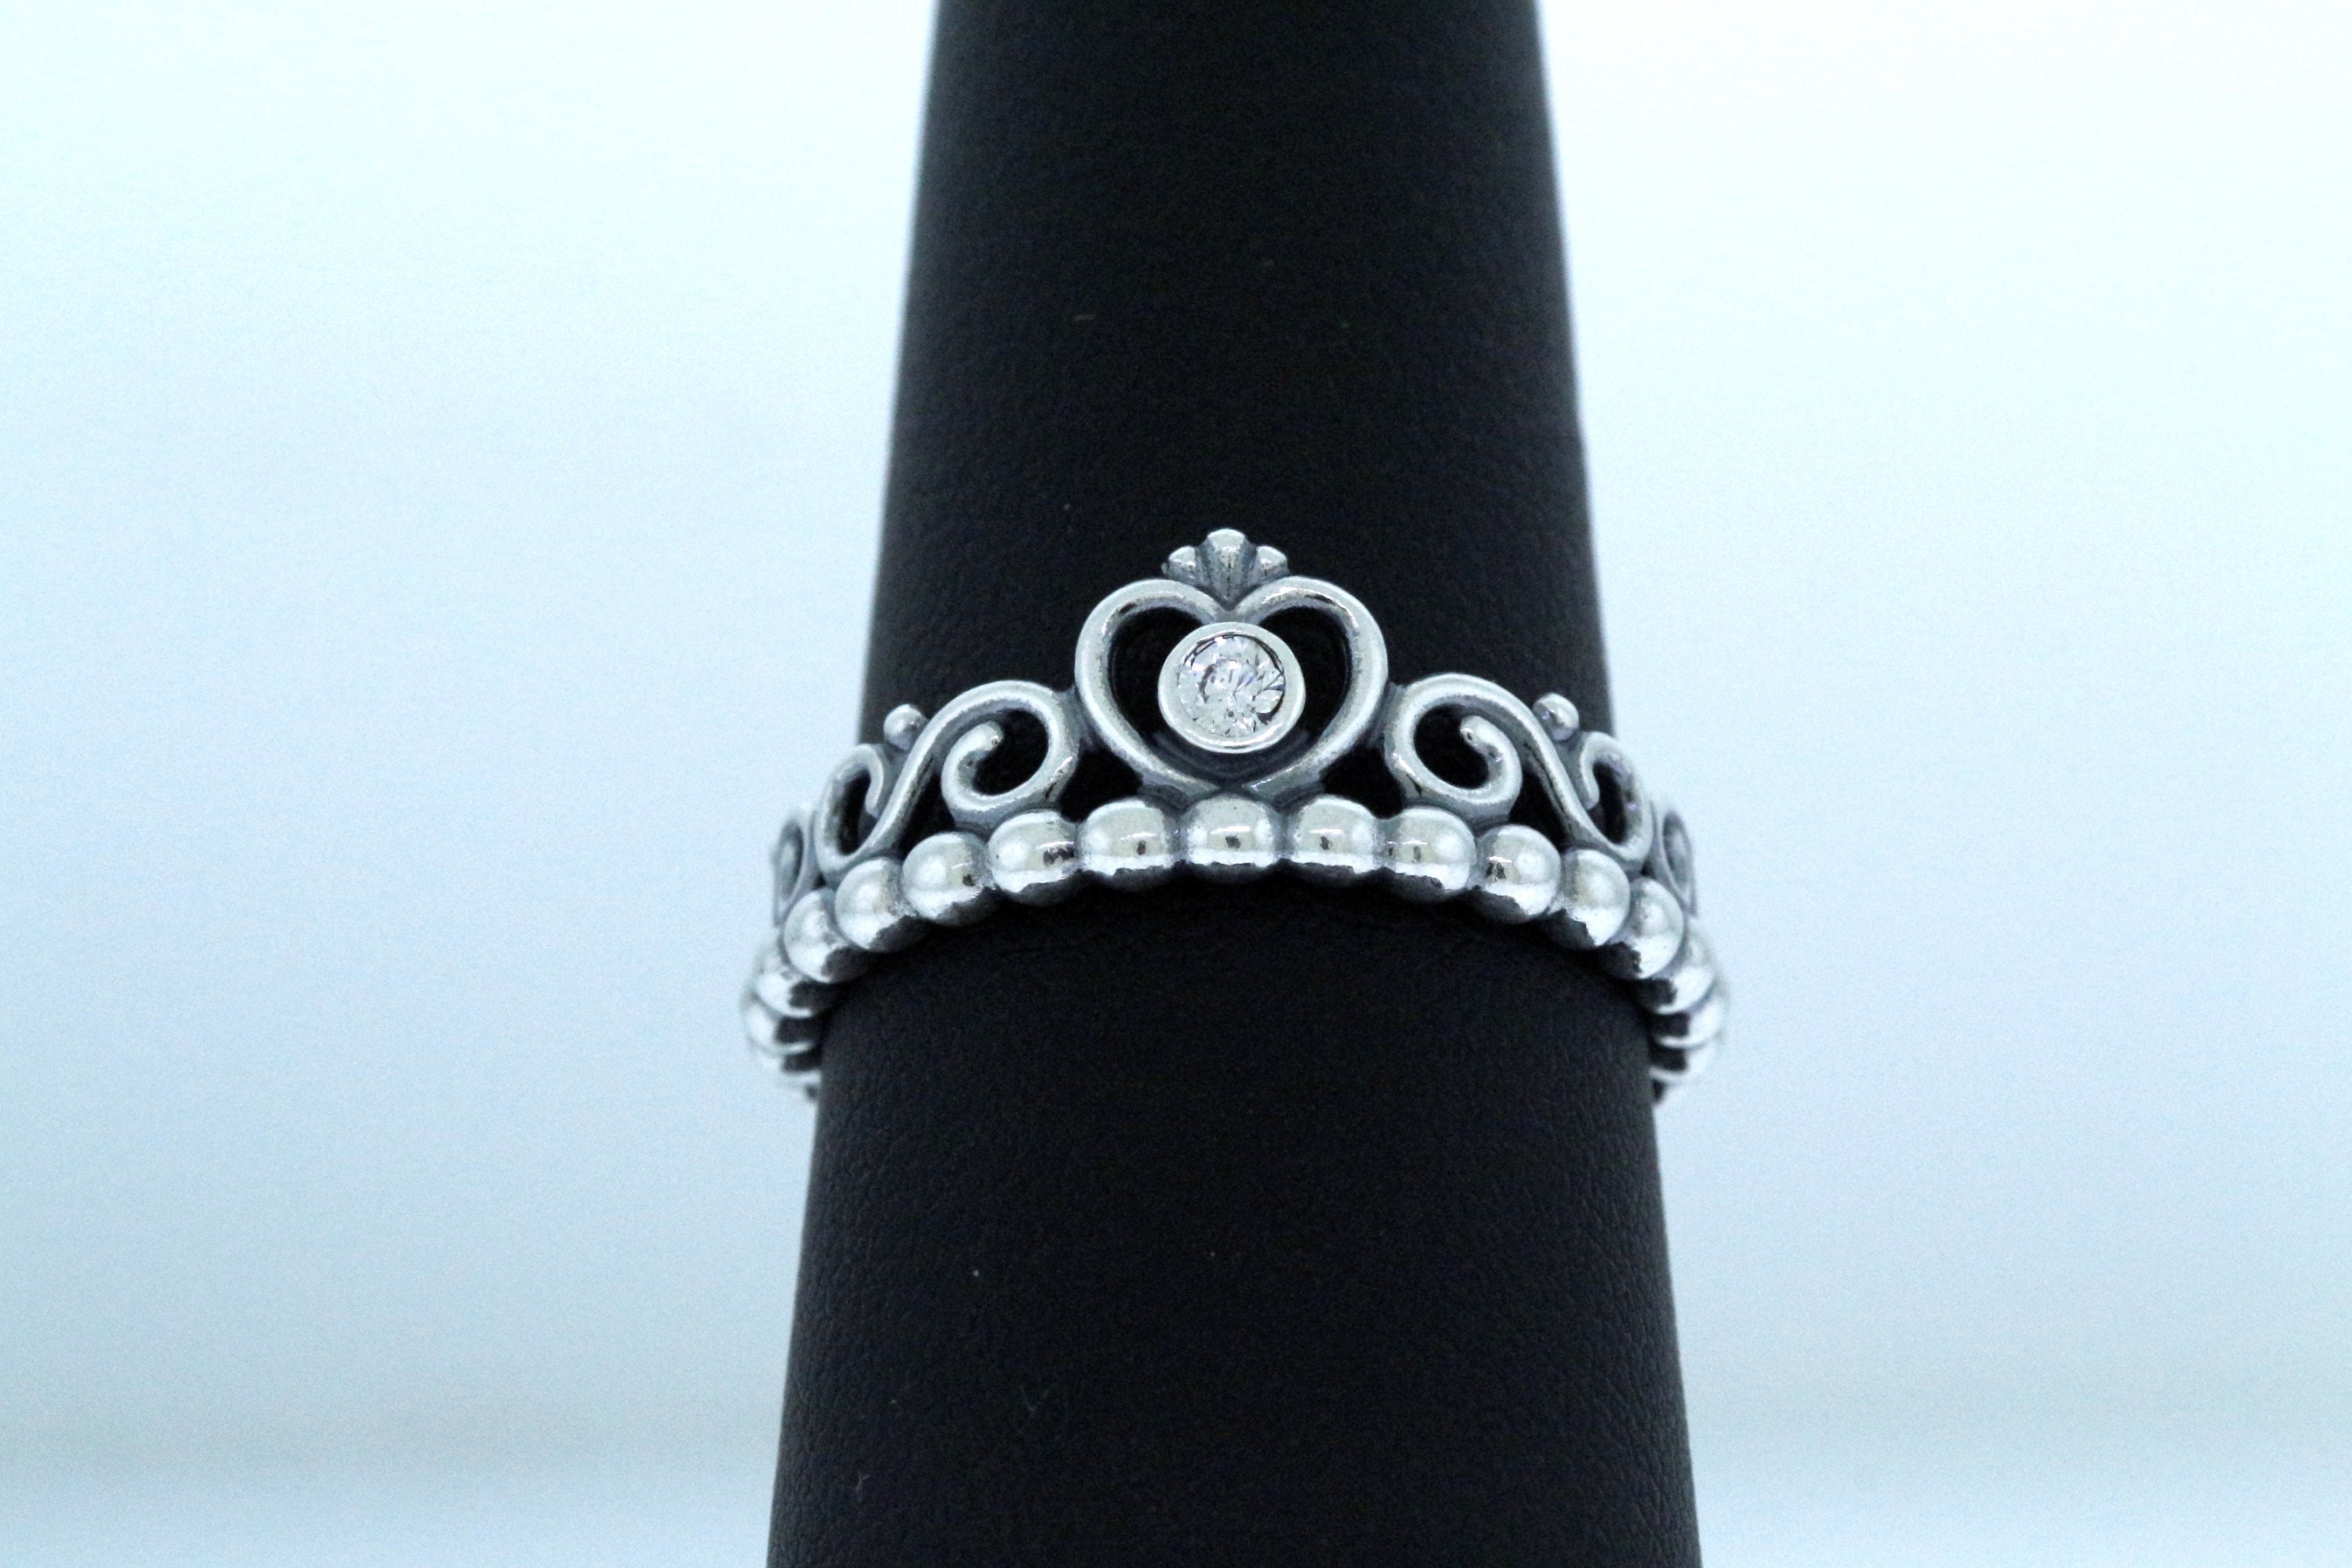 Pandora Princess Tiara Crown Ring | Tiaras and crowns, Pandora princess,  Ring shopping